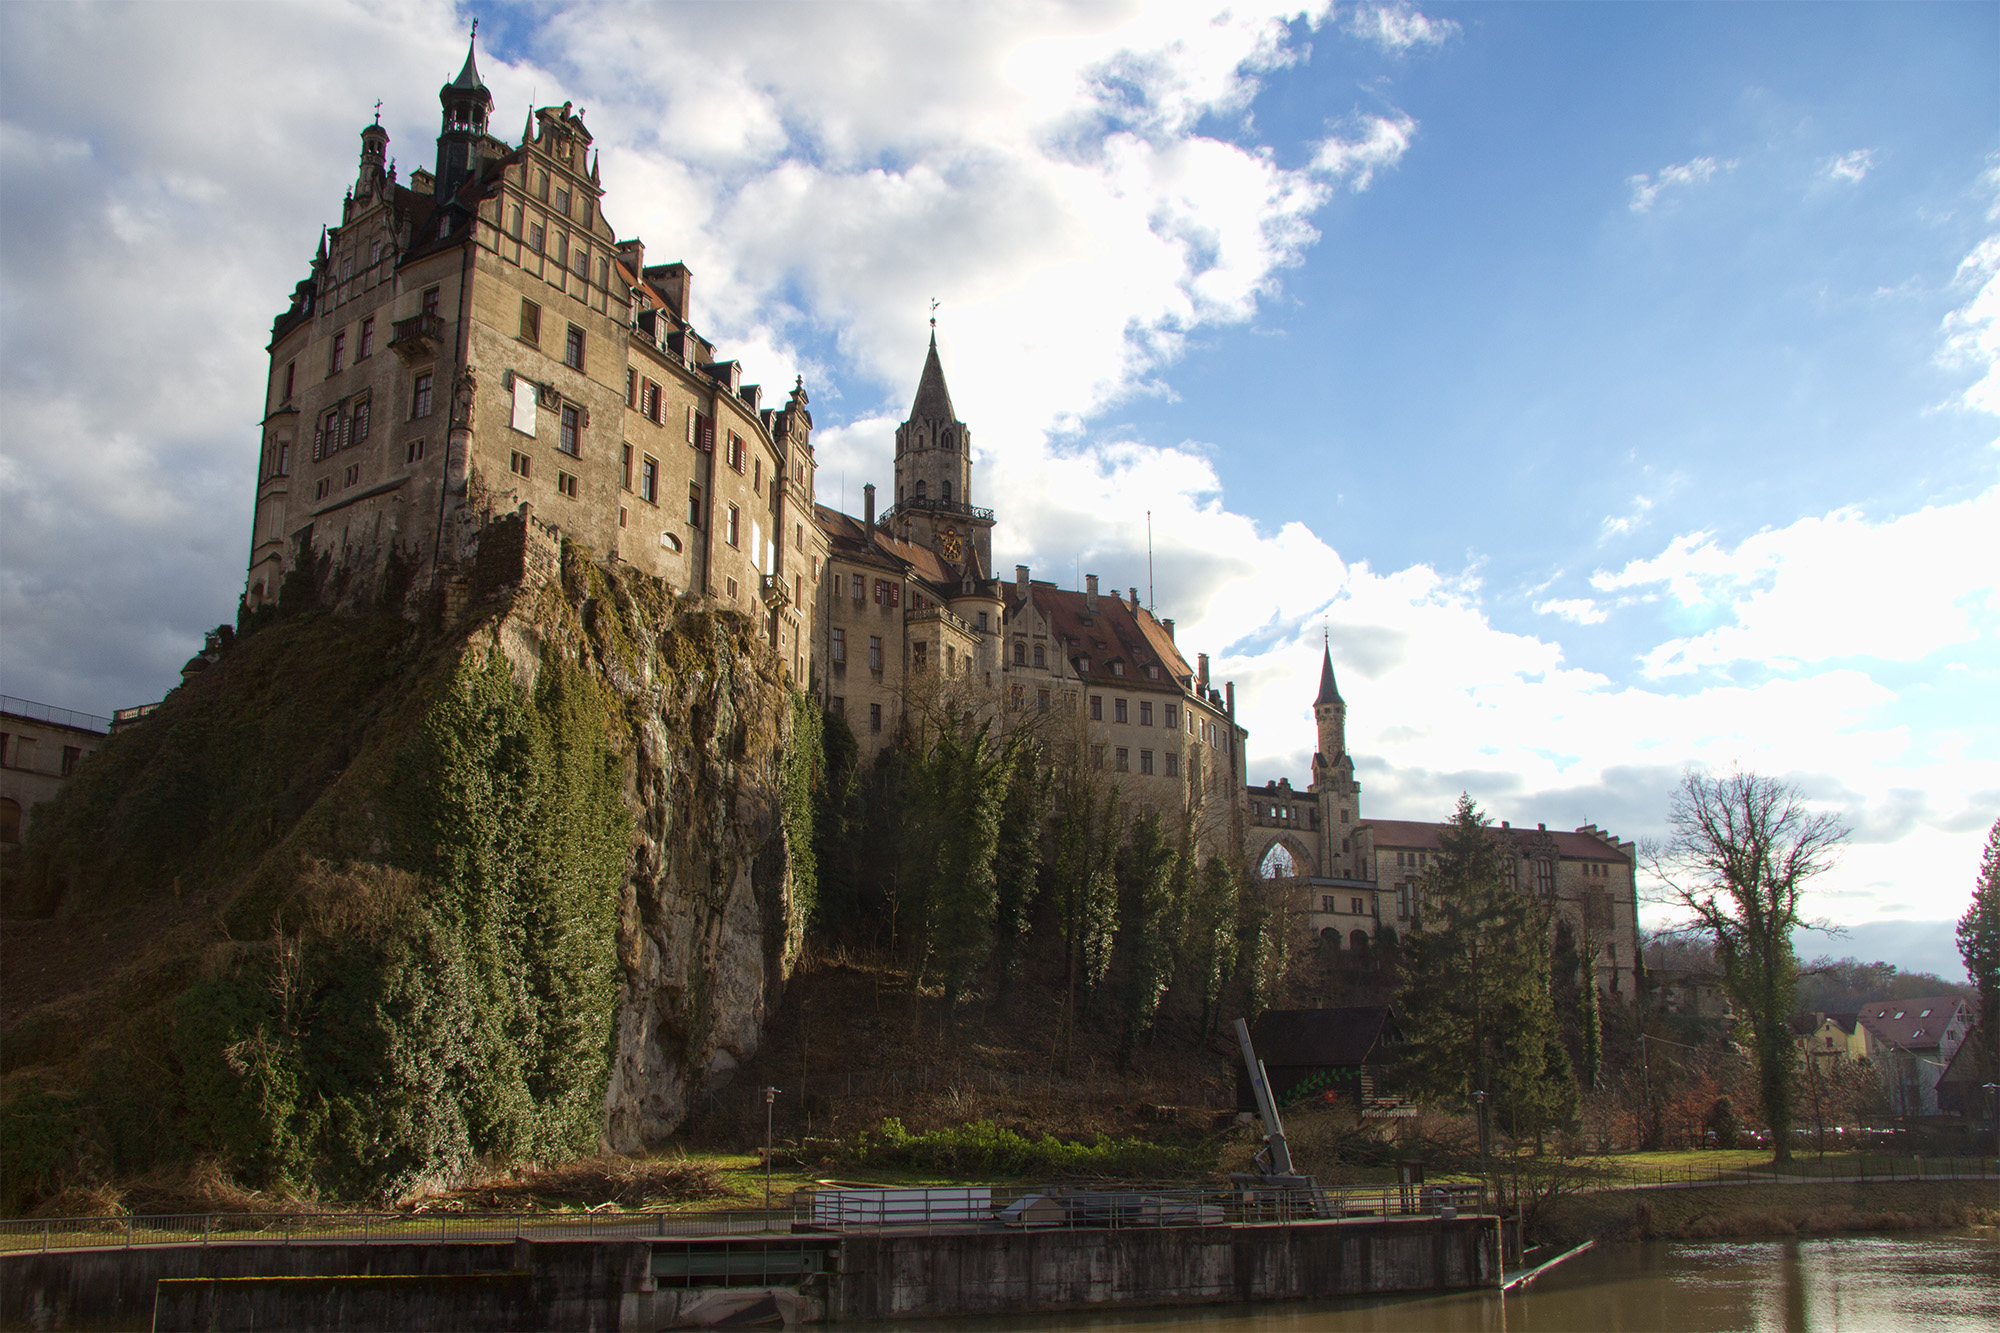 Sigmaringen Castle Backgrounds, Compatible - PC, Mobile, Gadgets| 2000x1333 px